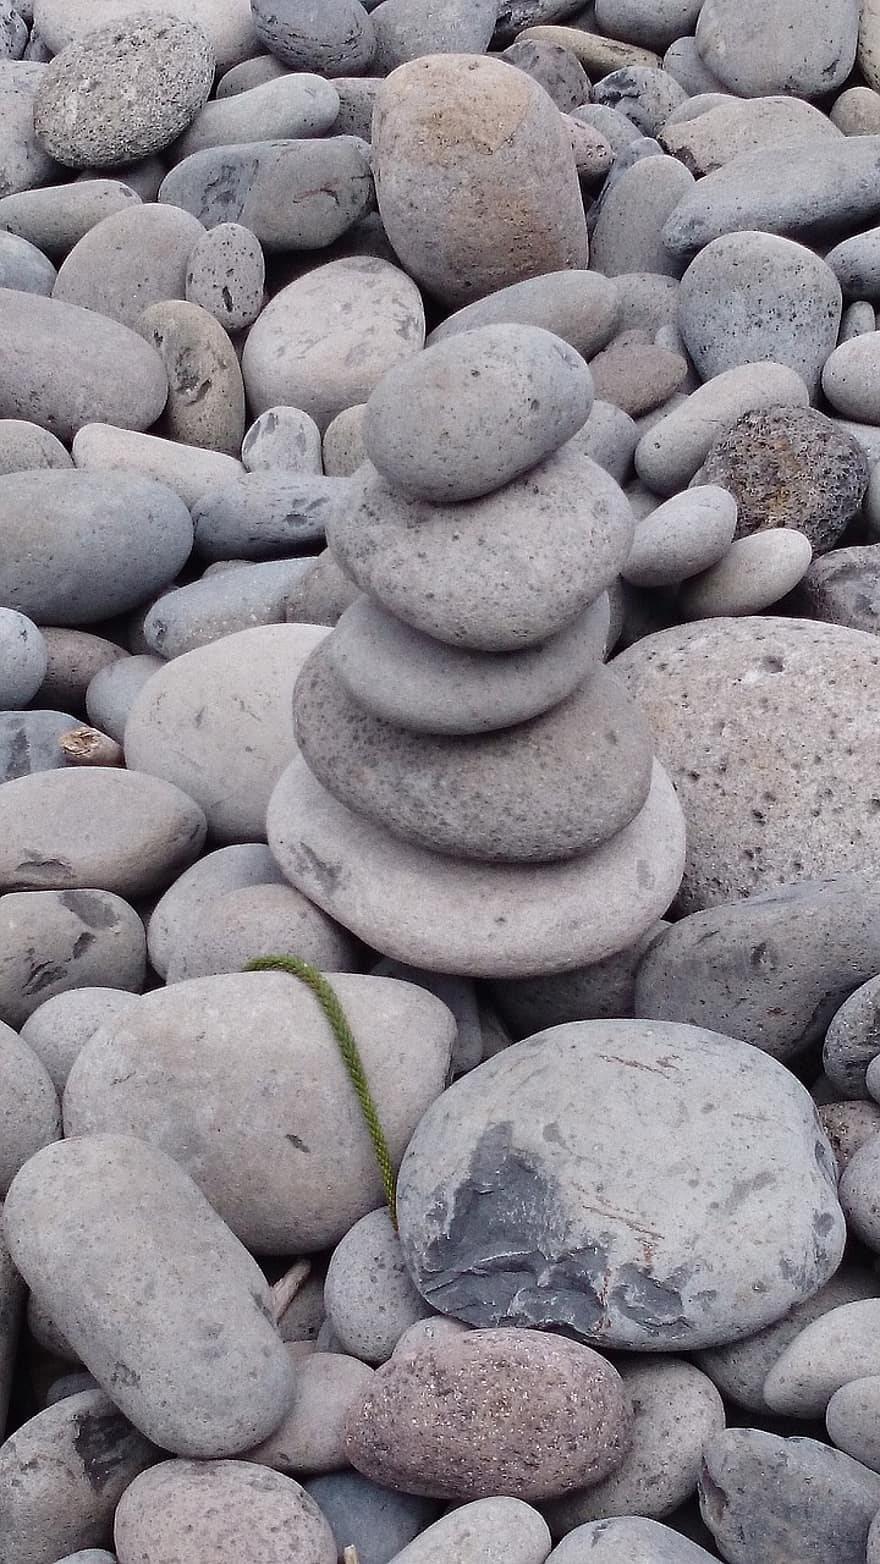 kivet, kiviä, saldo, pikkukivet, tasapainoiset kivet, meditaatio, zen, ranta, tarkkaavaisuus, hengellisyys